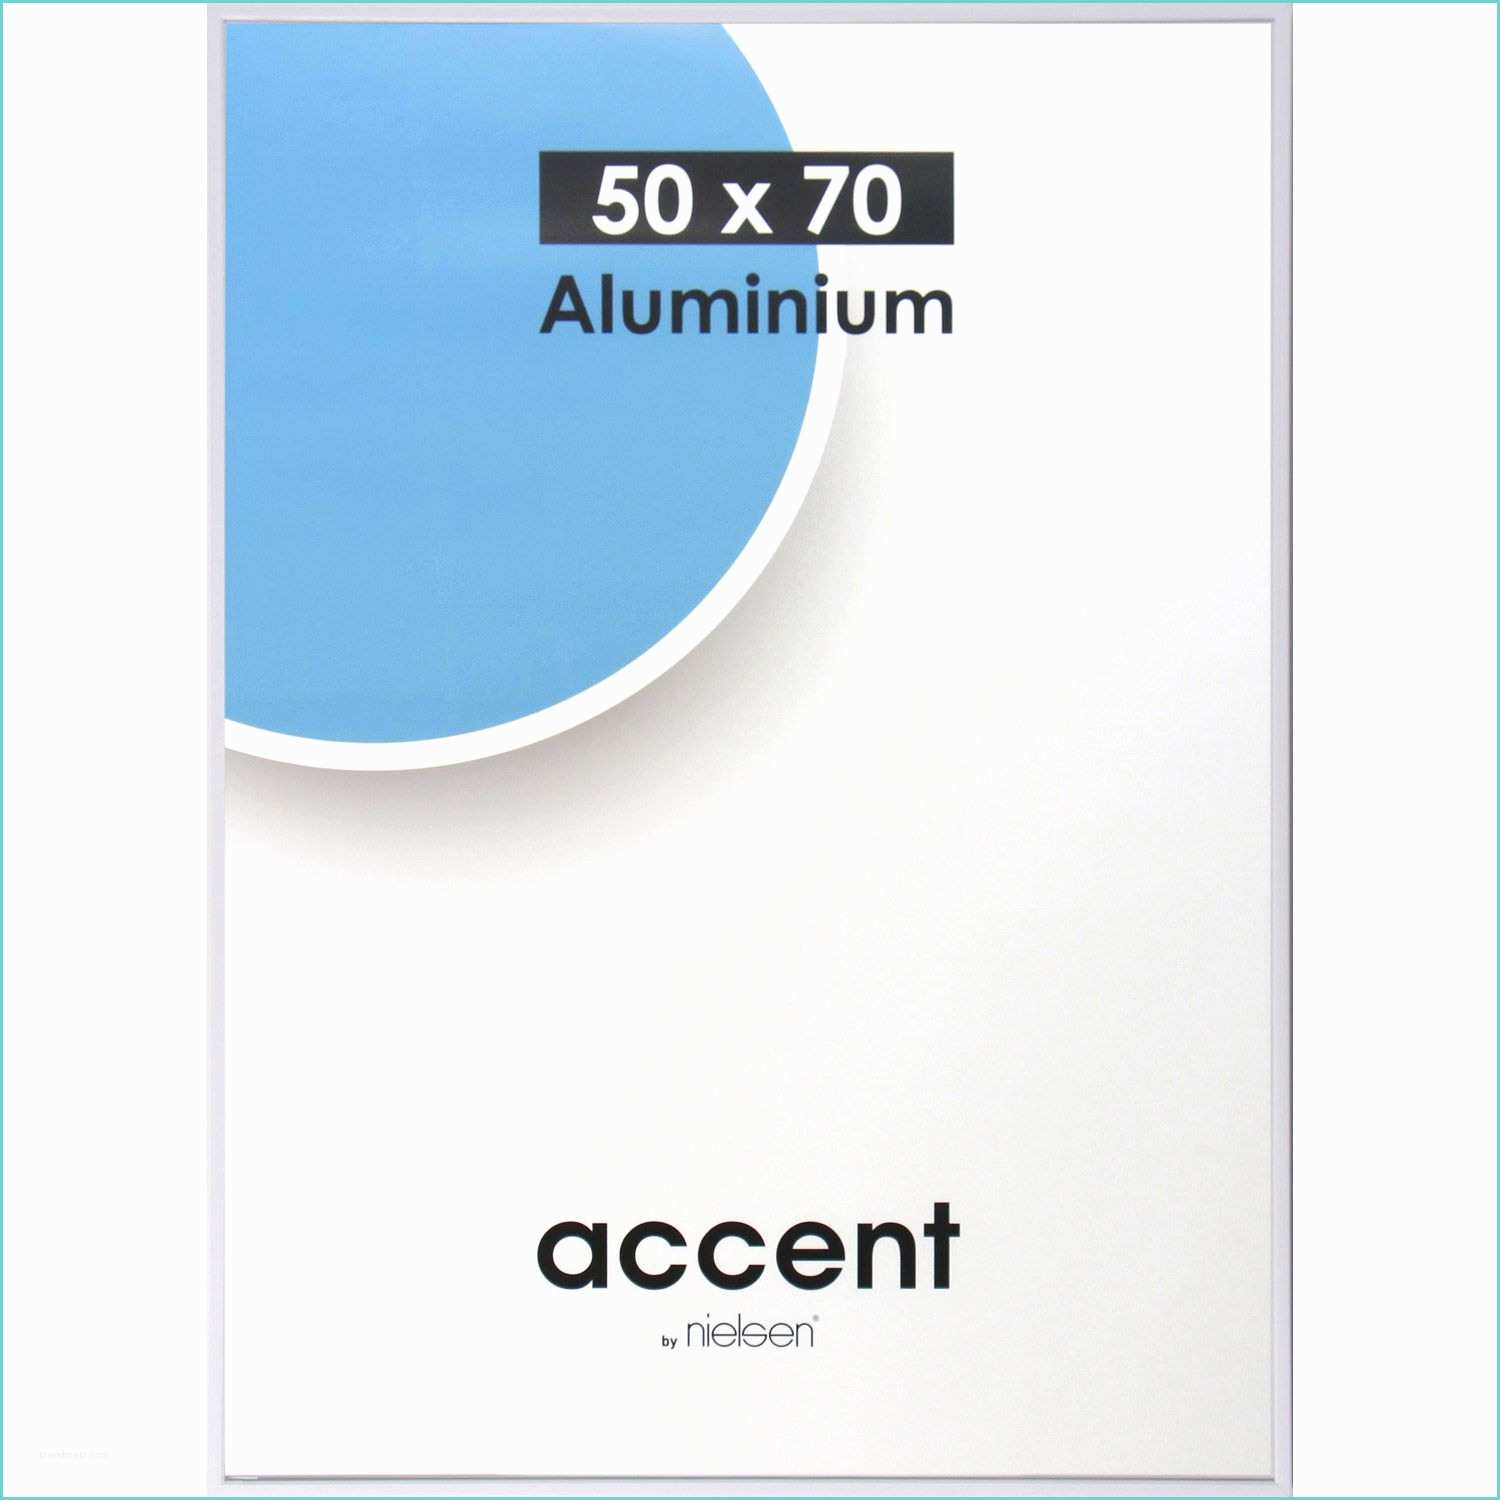 Cadre Aluminium Leroy Merlin Cadre Aluminium Nielsen Accent 50 X 70 Cm Blanc